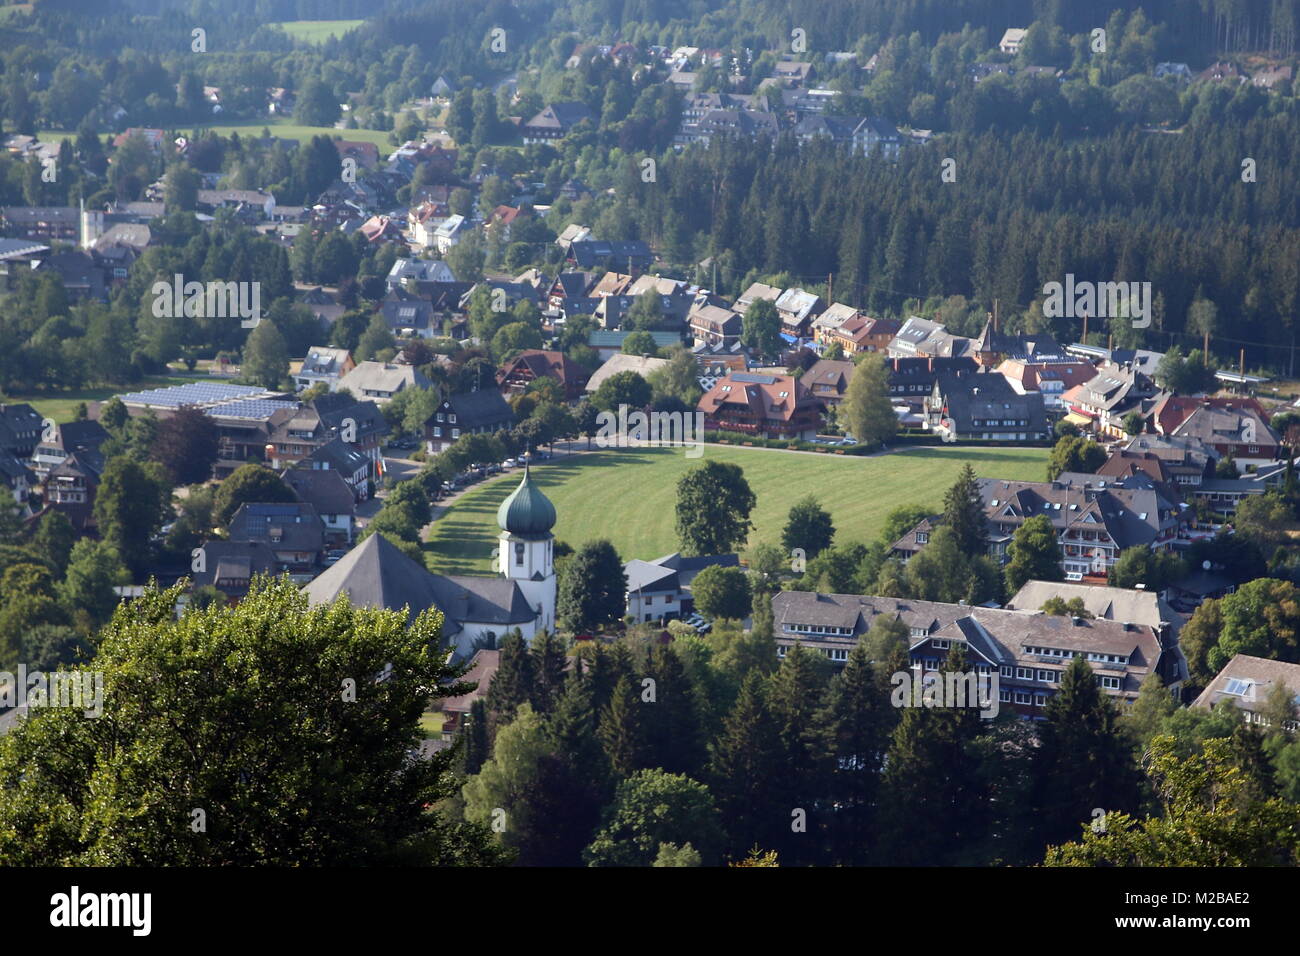 Blick vom der Anlaufturm Adlerschanze auf das Ortszentrum von Hinterzarten Foto de stock